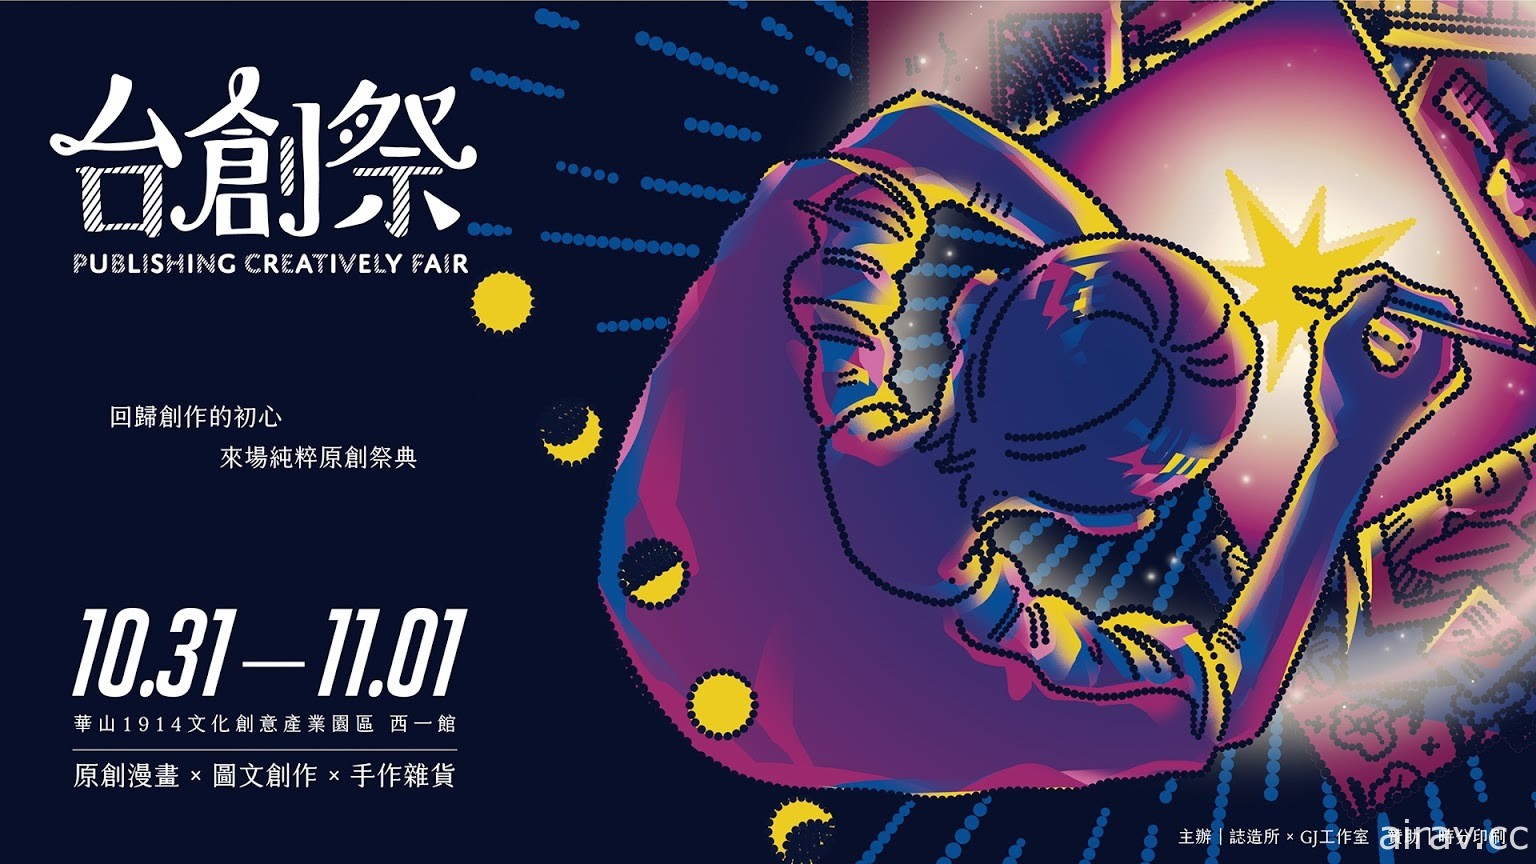 “台创祭”漫画、插画、手作的原创祭典 10 月 31 日起连续两天在华山热闹展出